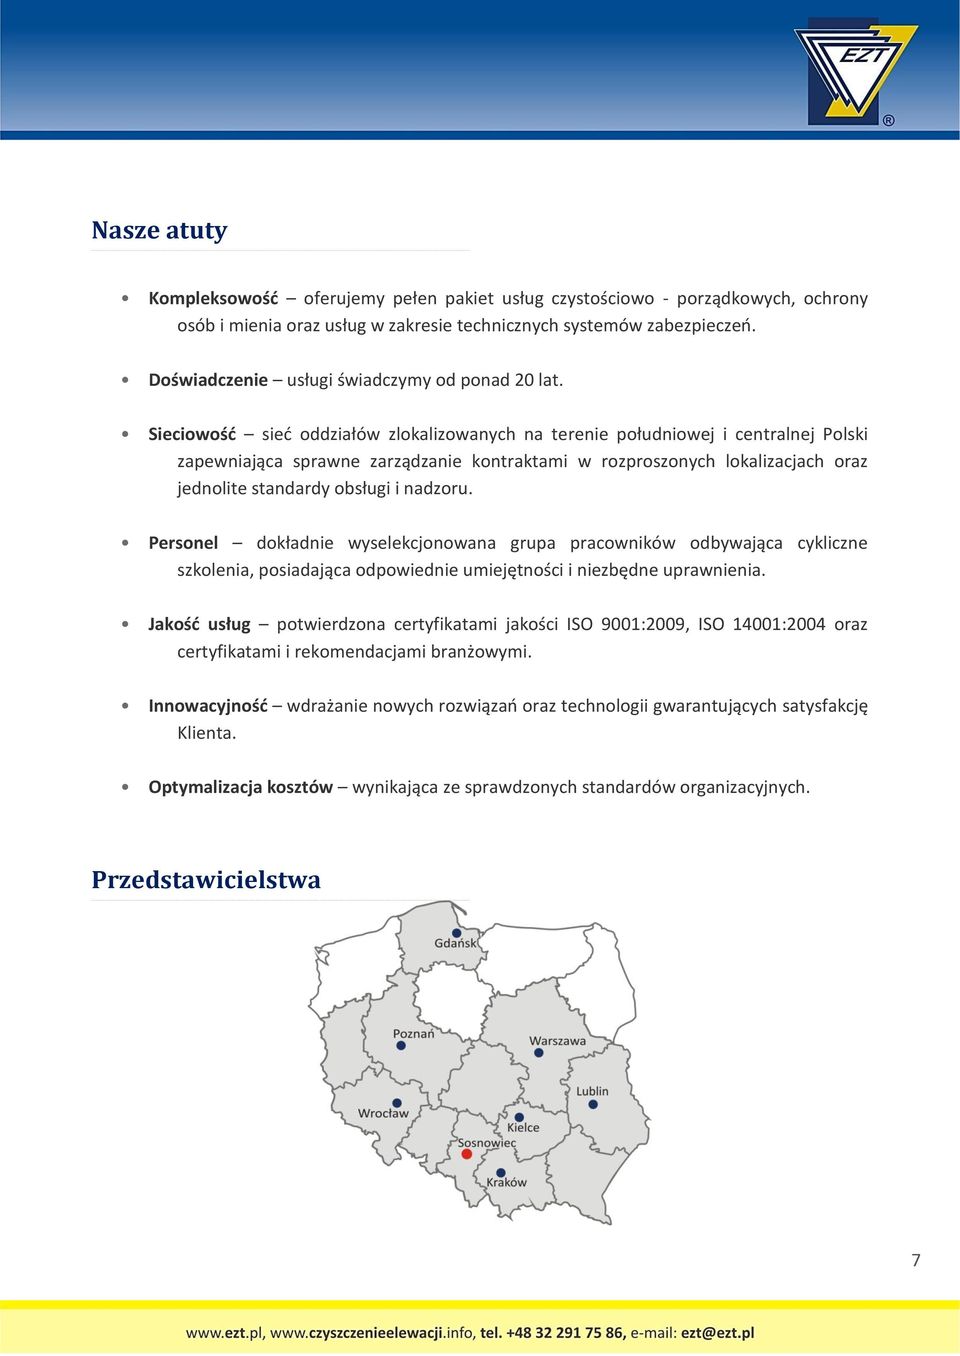 Sieciowość sieć oddziałów zlokalizowanych na terenie południowej i centralnej Polski zapewniająca sprawne zarządzanie kontraktami w rozproszonych lokalizacjach oraz jednolite standardy obsługi i